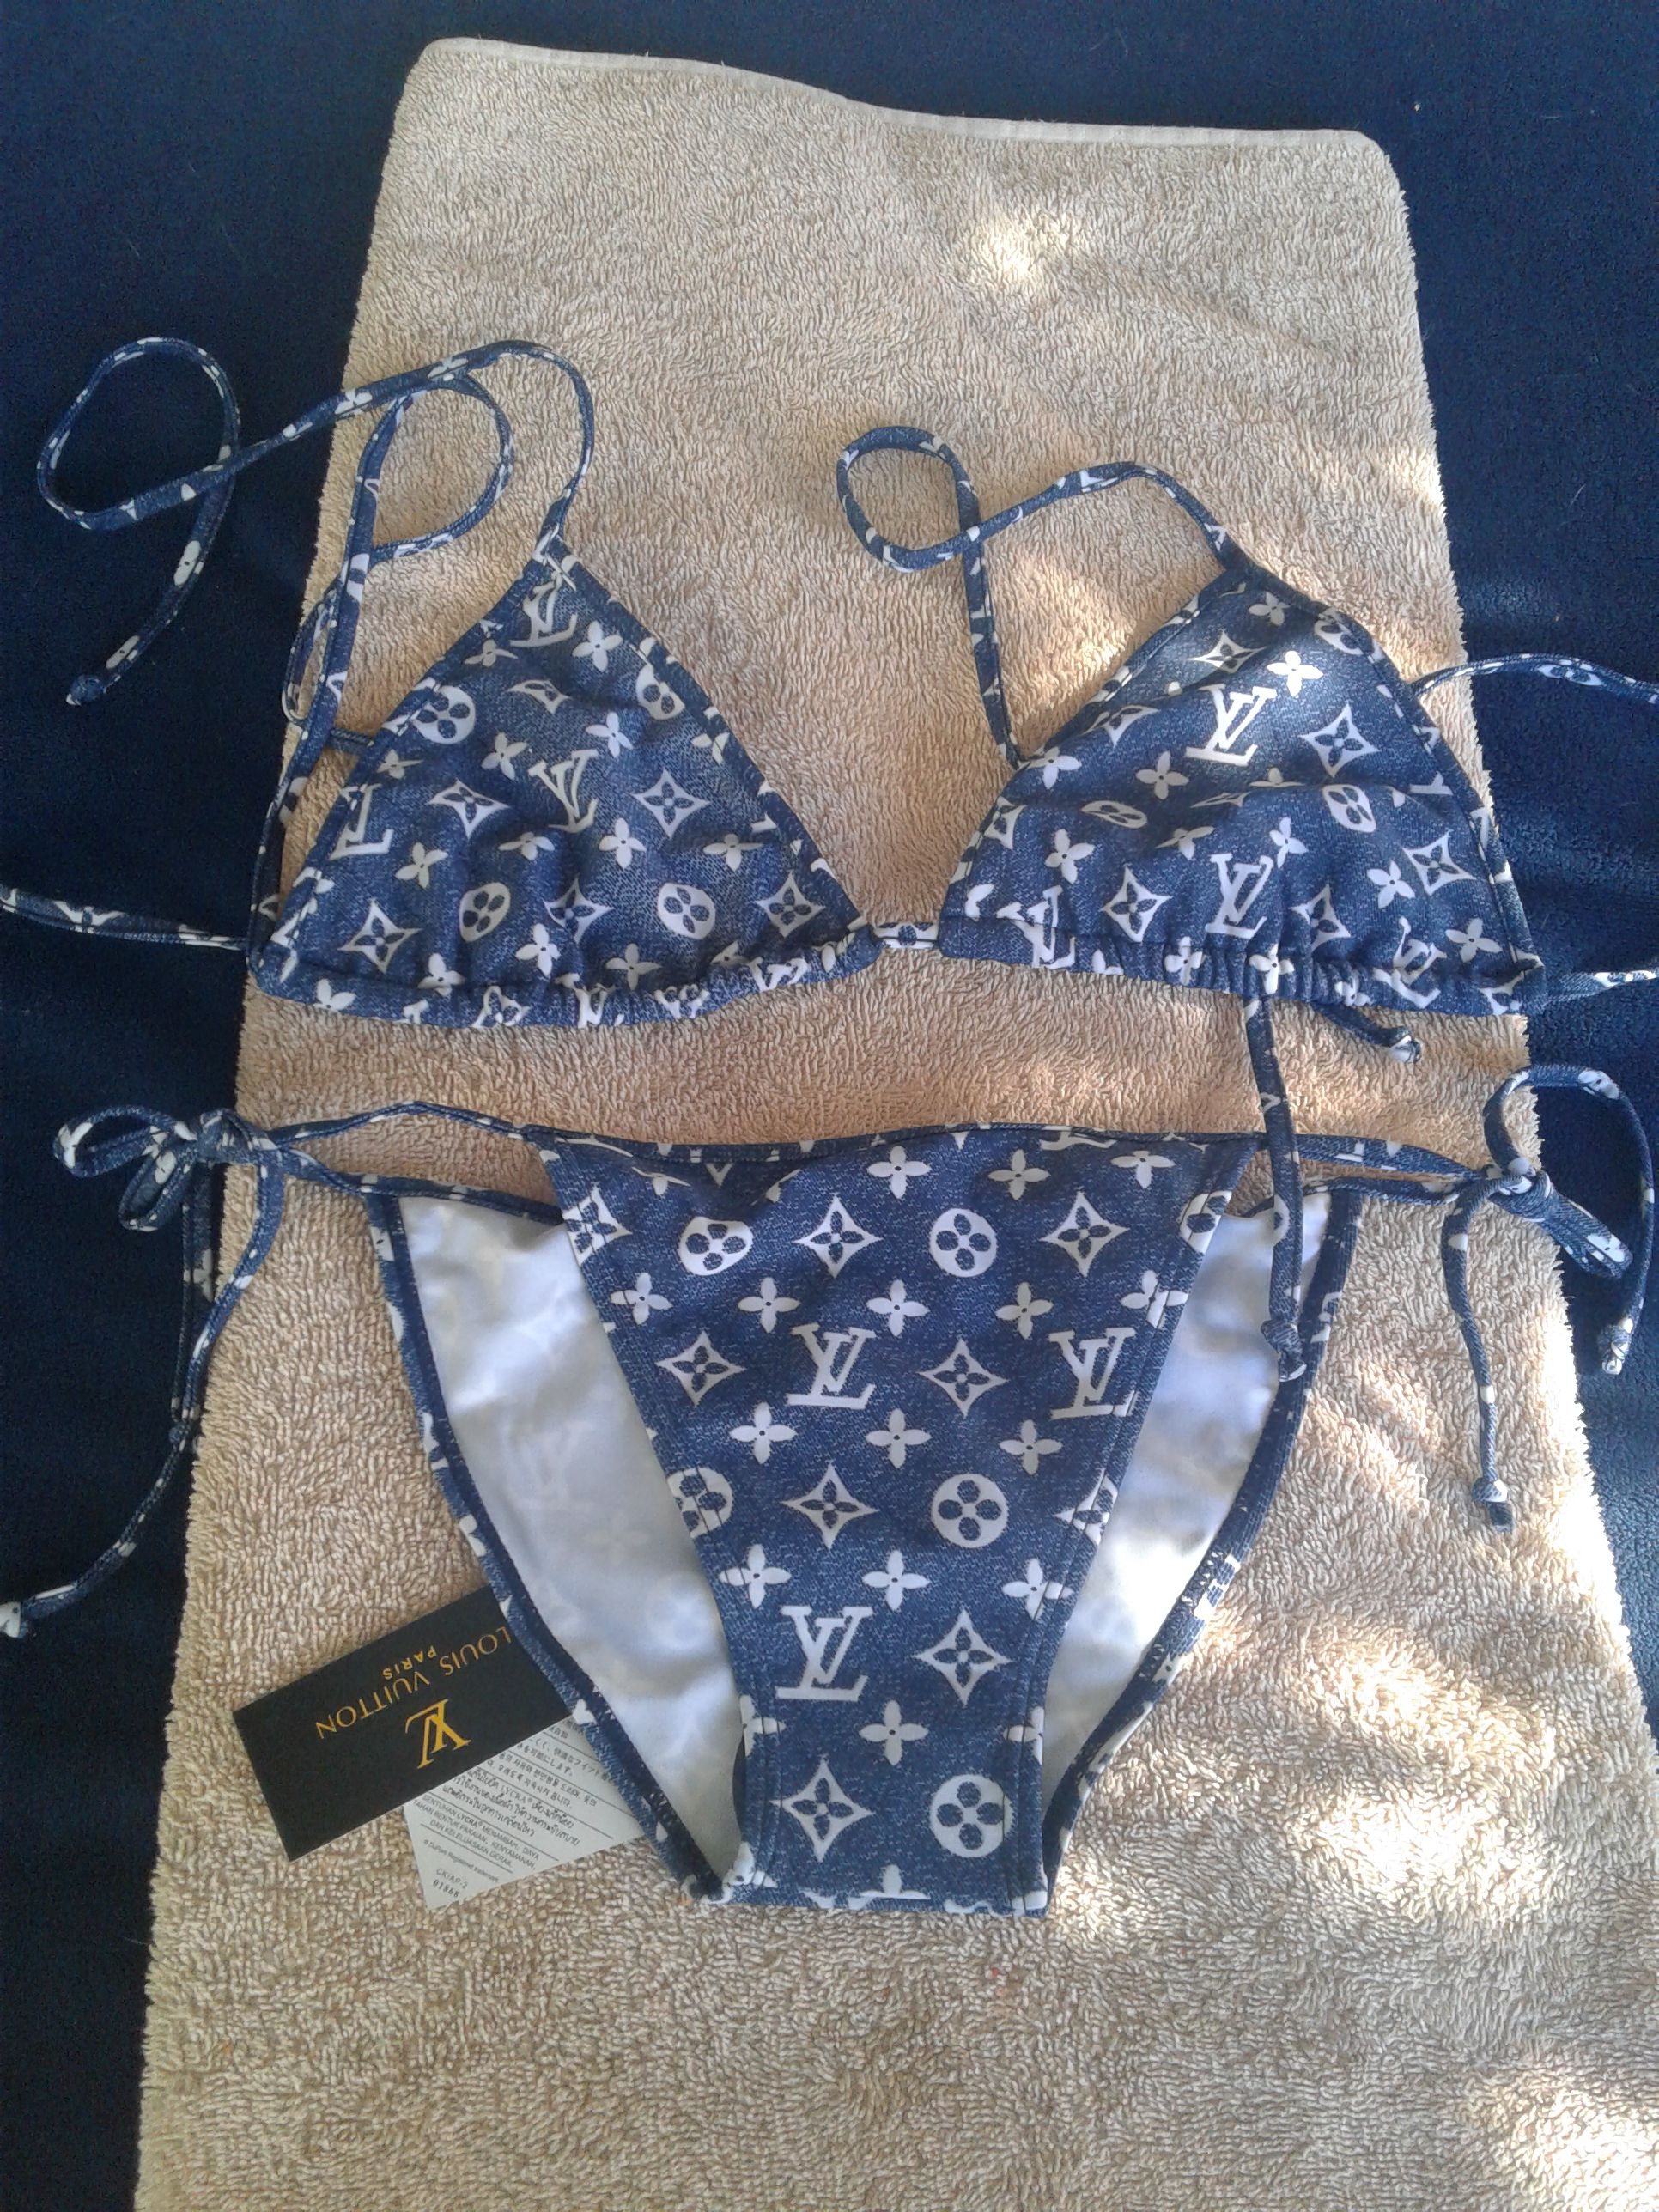 Louis Vuitton swimming suit for Sale in Phoenix, AZ - OfferUp